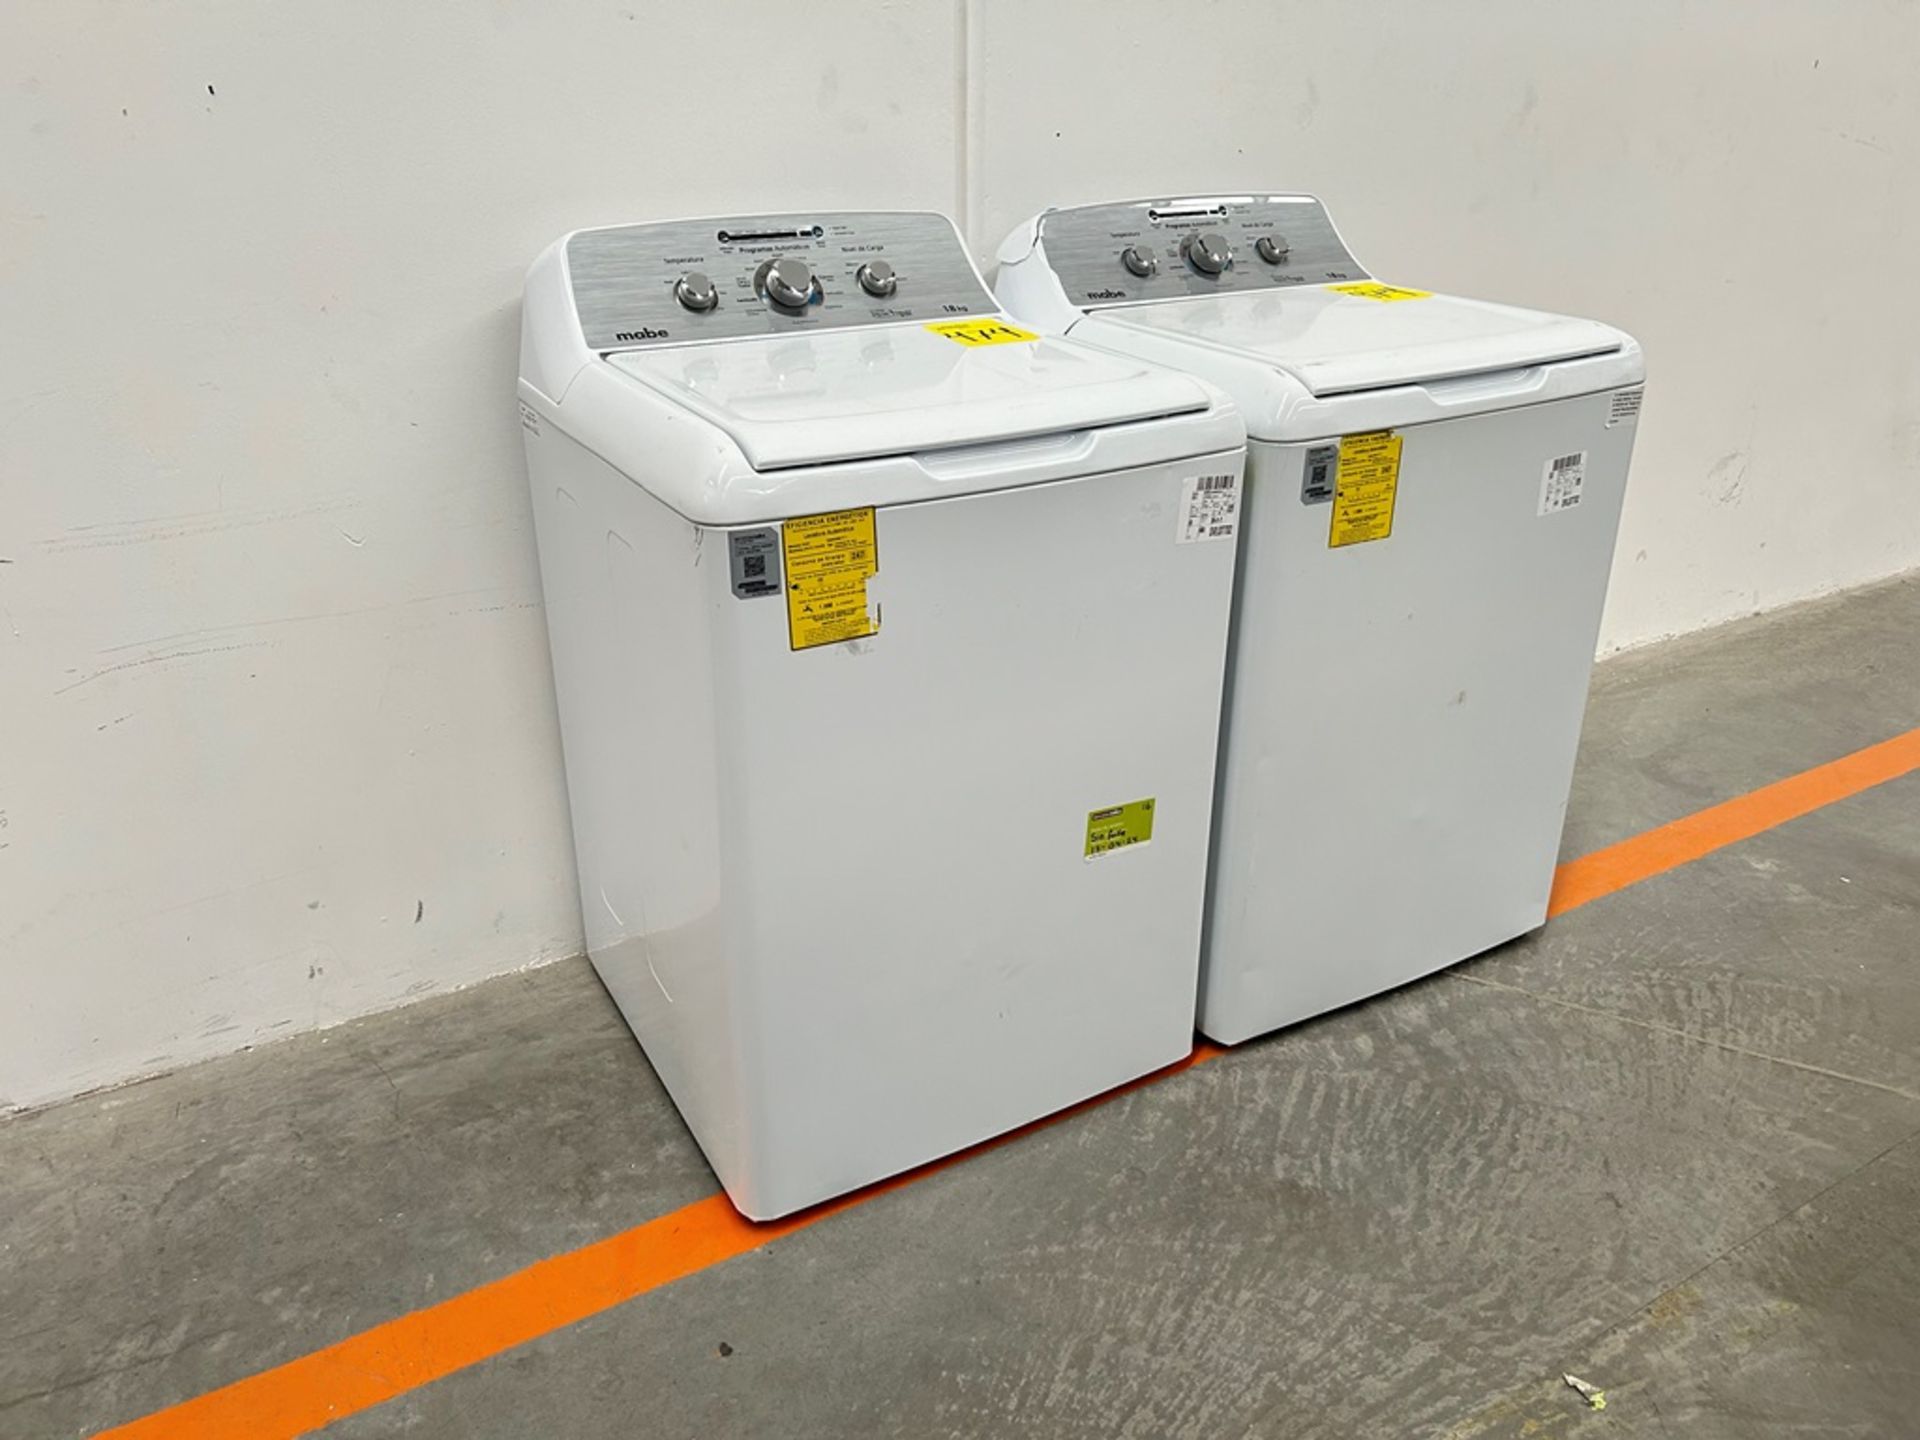 Lote de 2 lavadoras contiene: 1 Lavadora de 18 KG Marca MABE, Modelo LMA78113CBAB01, Serie S74287, - Image 2 of 10